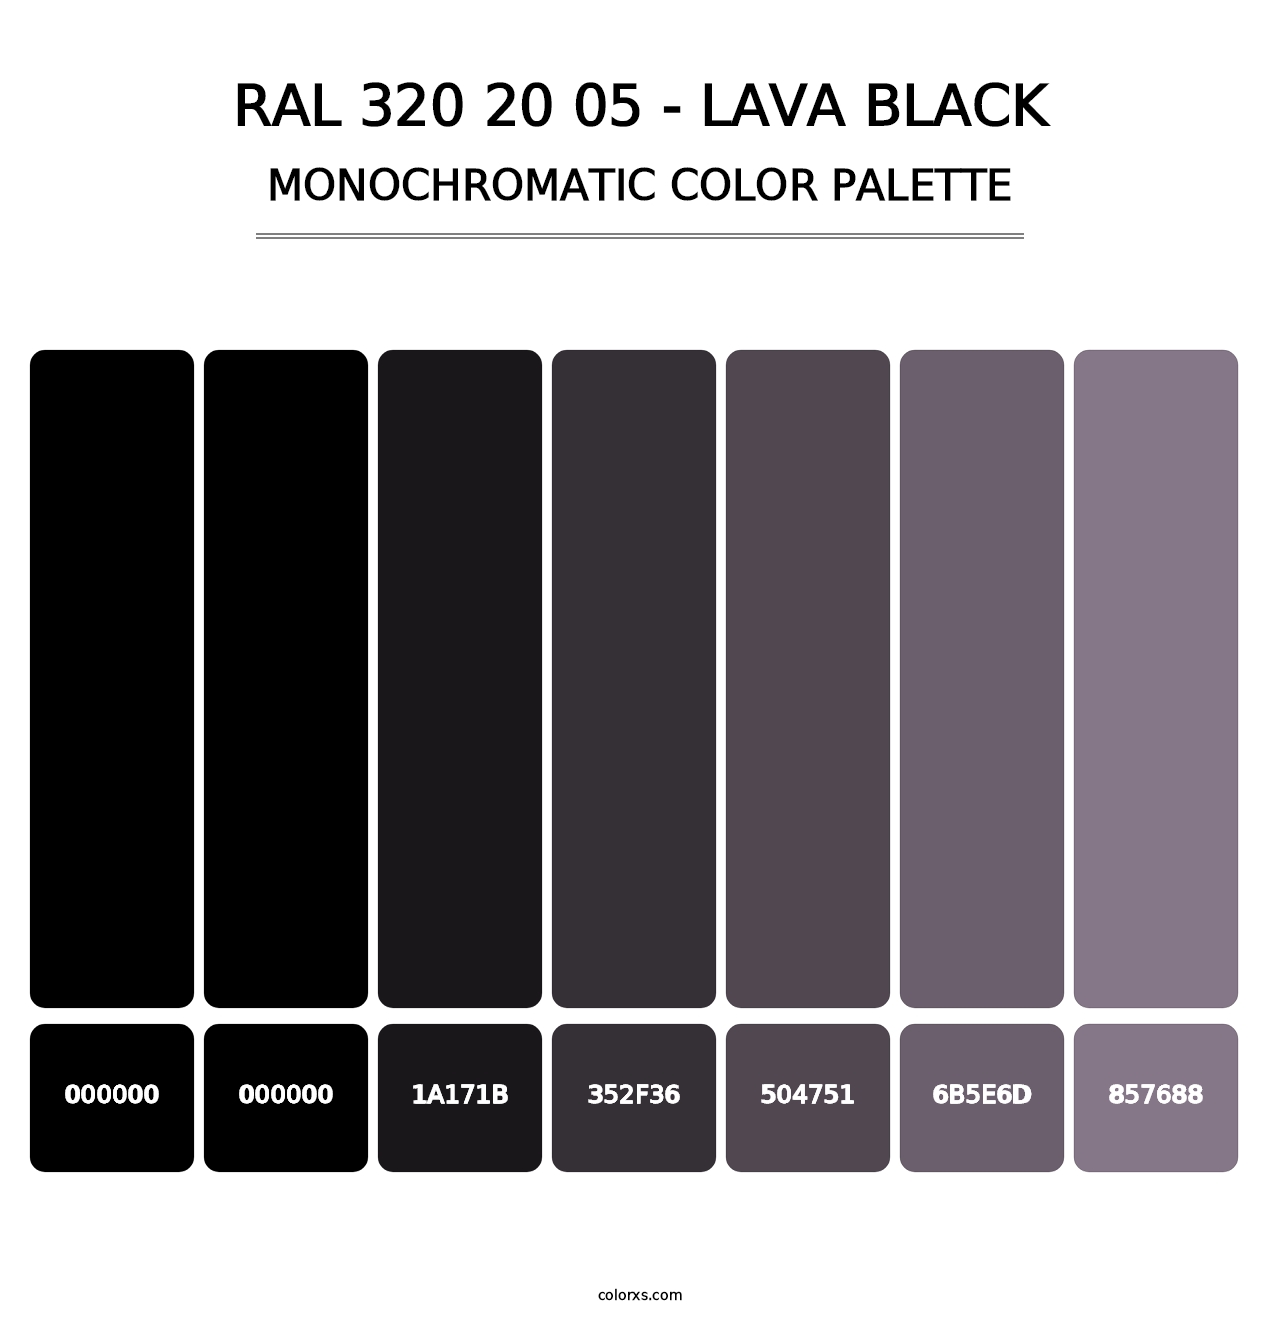 RAL 320 20 05 - Lava Black - Monochromatic Color Palette